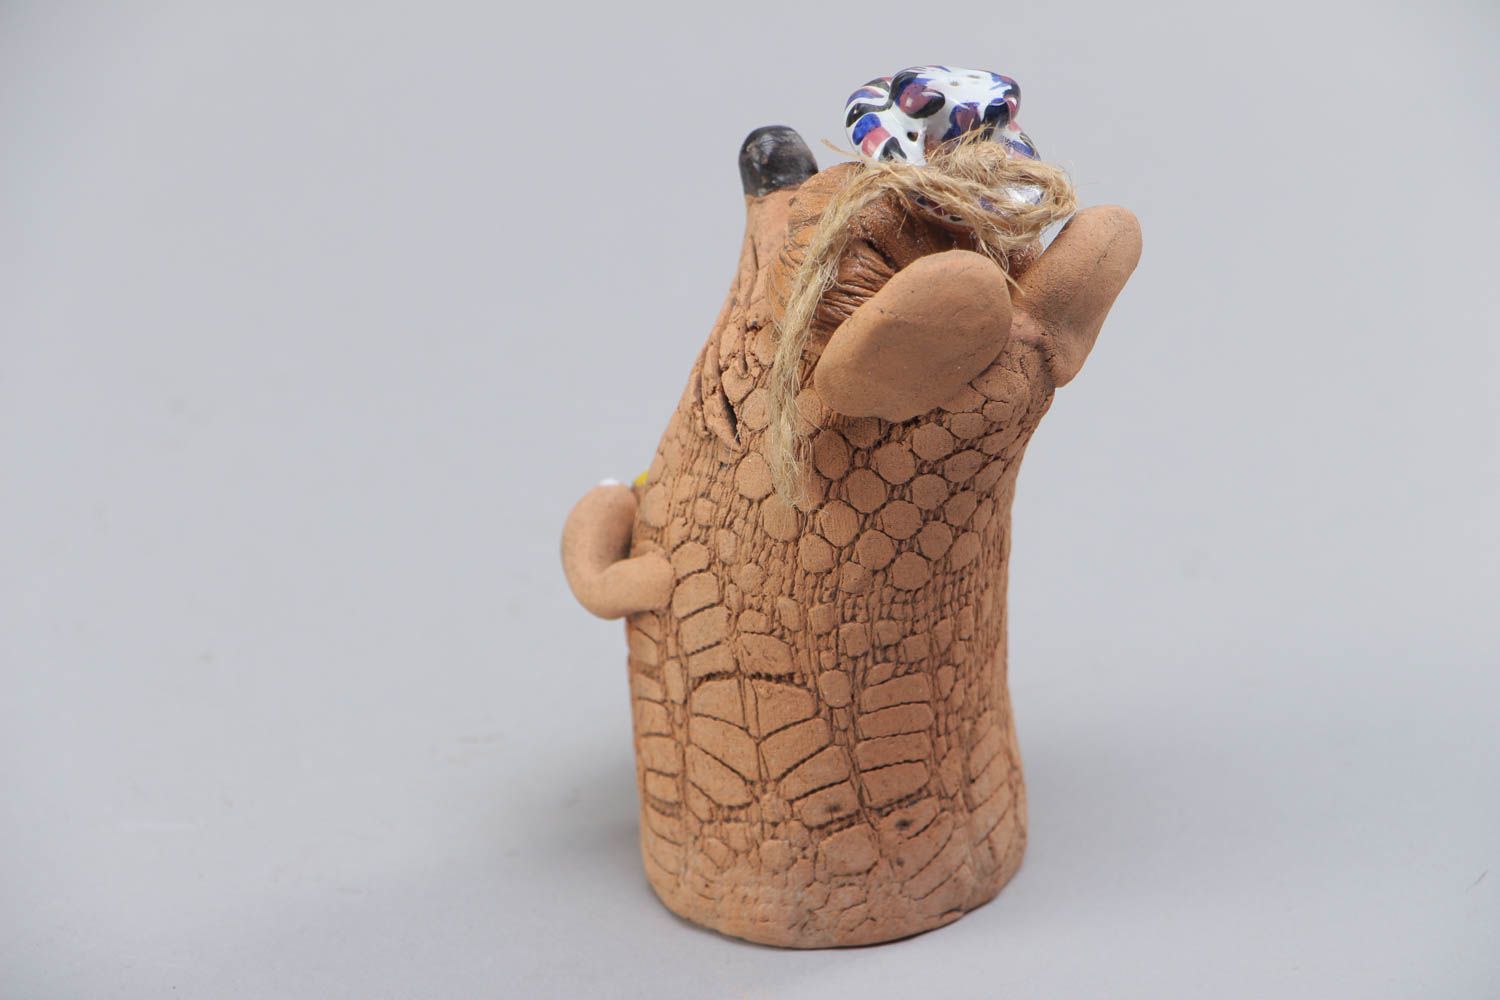 Расписанный красками глиняный колокольчик в виде мышки с сыром ручной работы фото 3